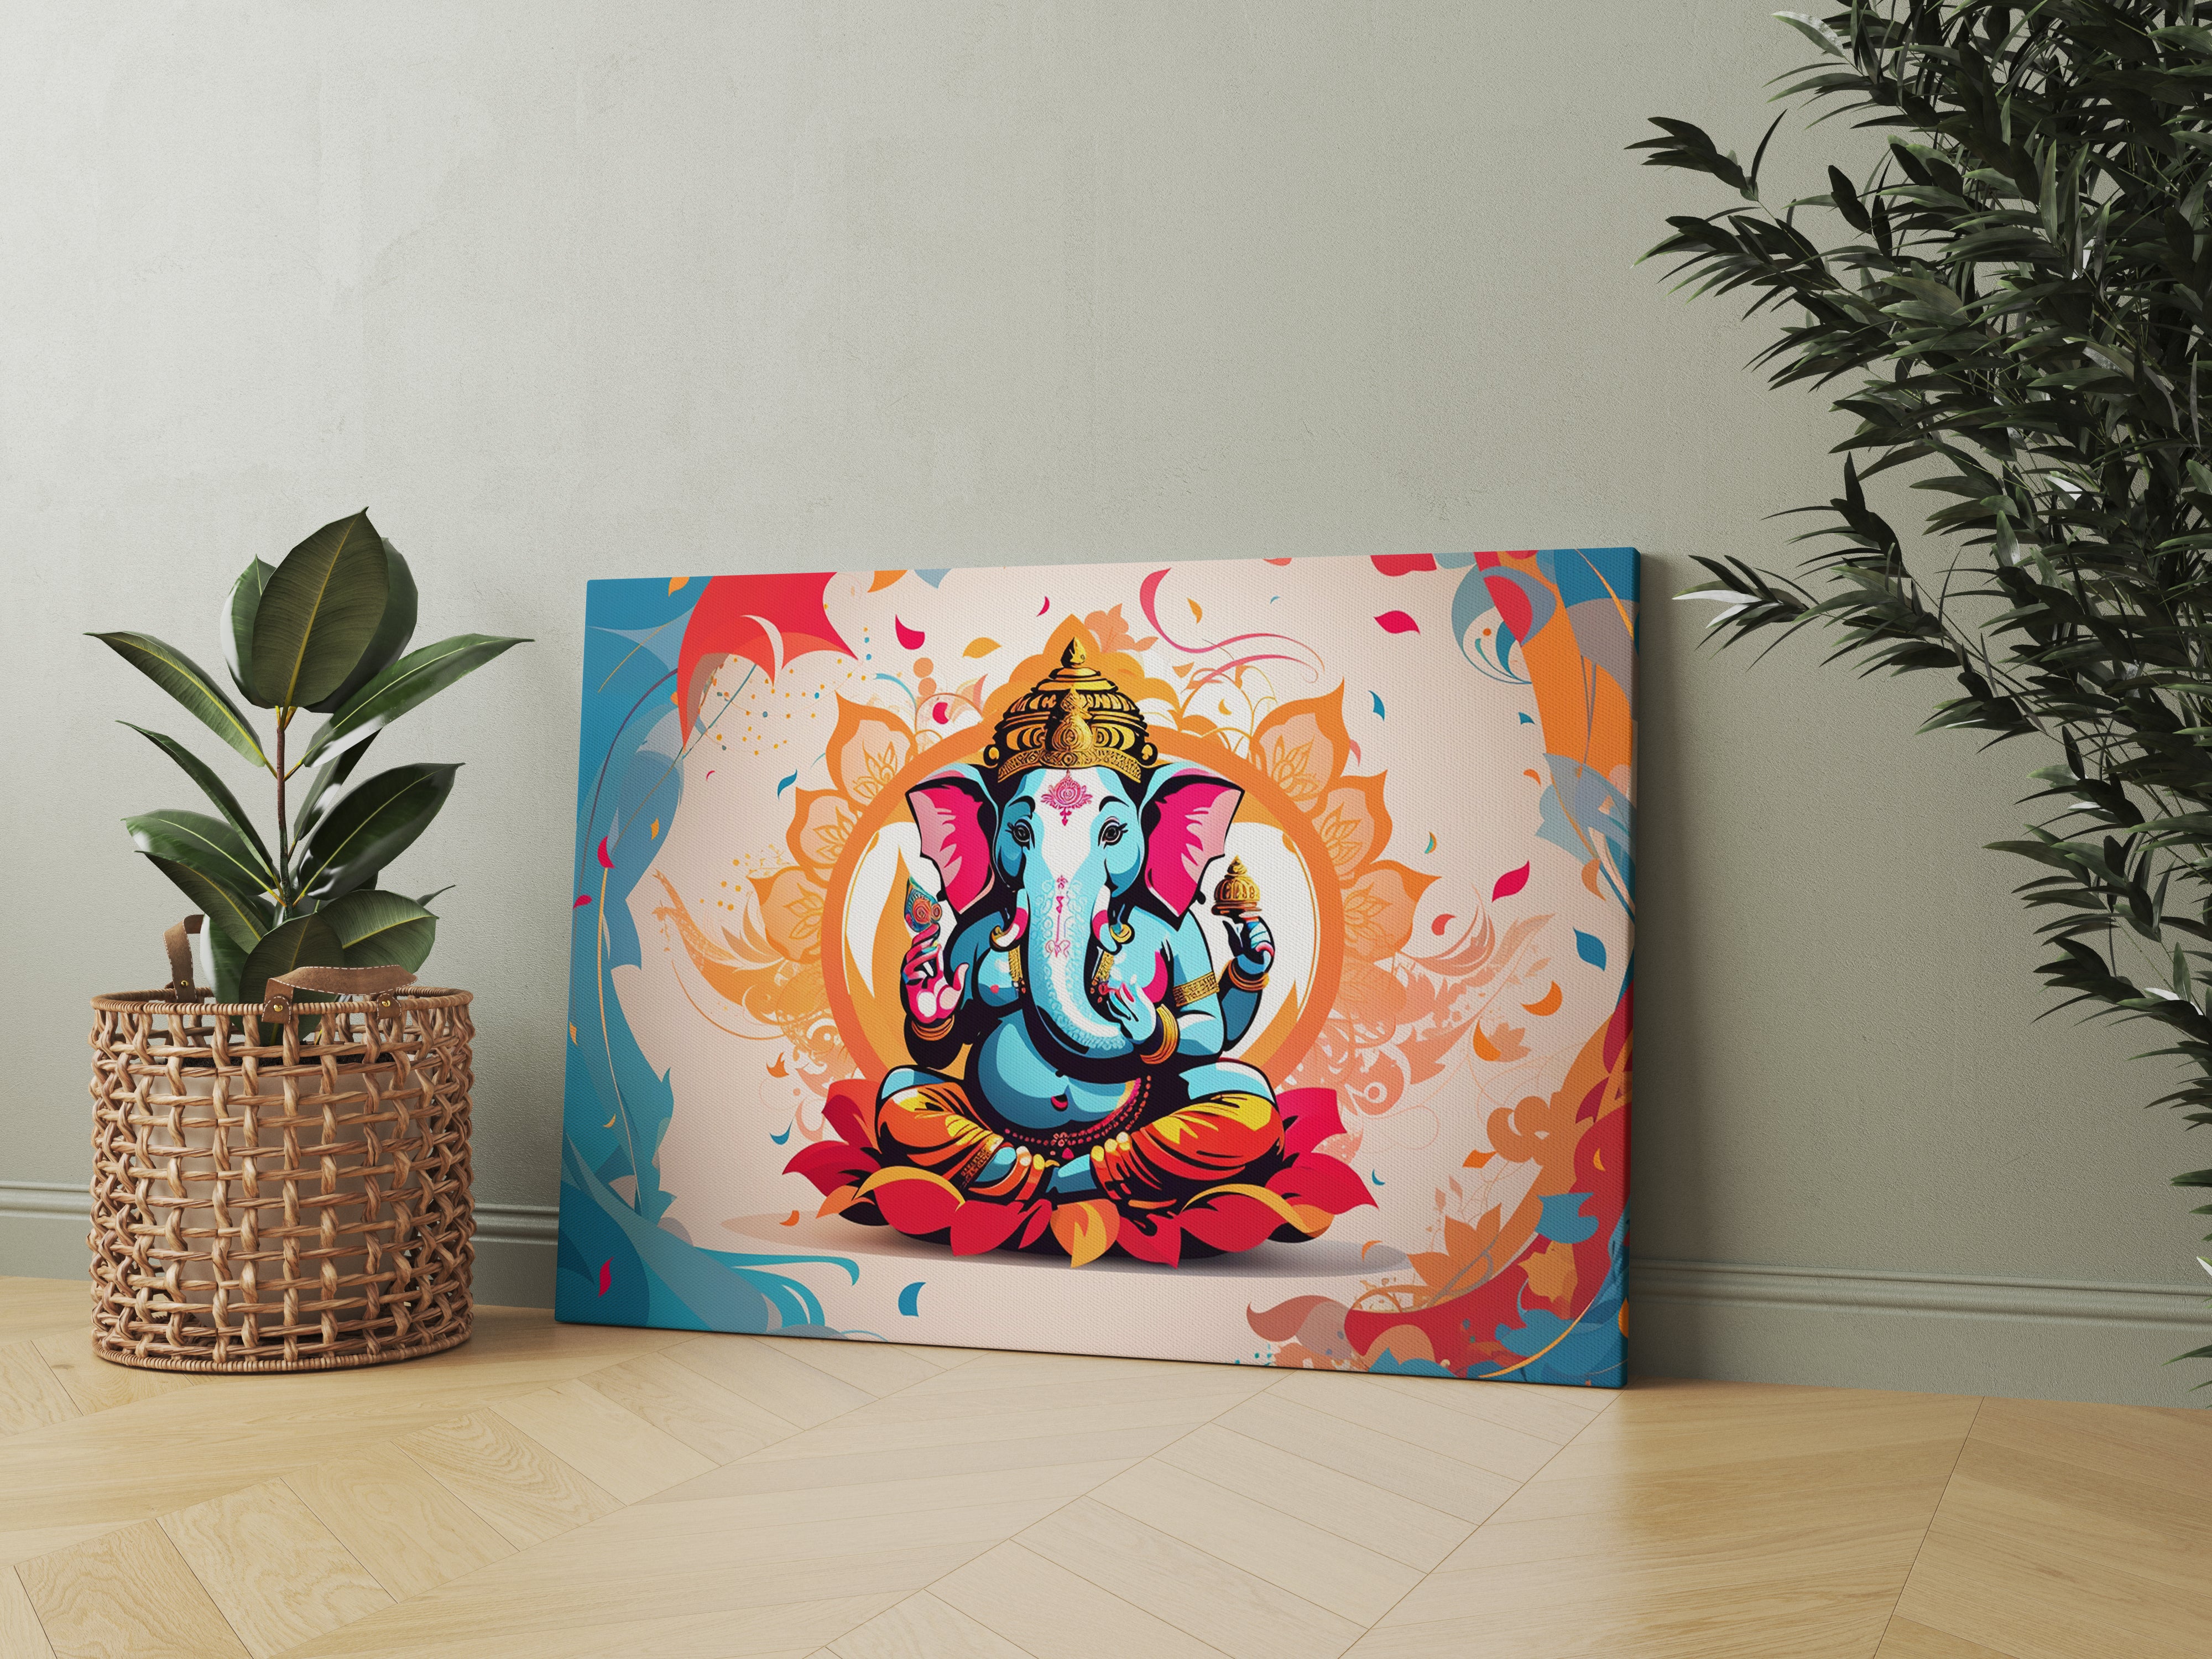 Lord Ganesha Canvas Abstract Wall Painting